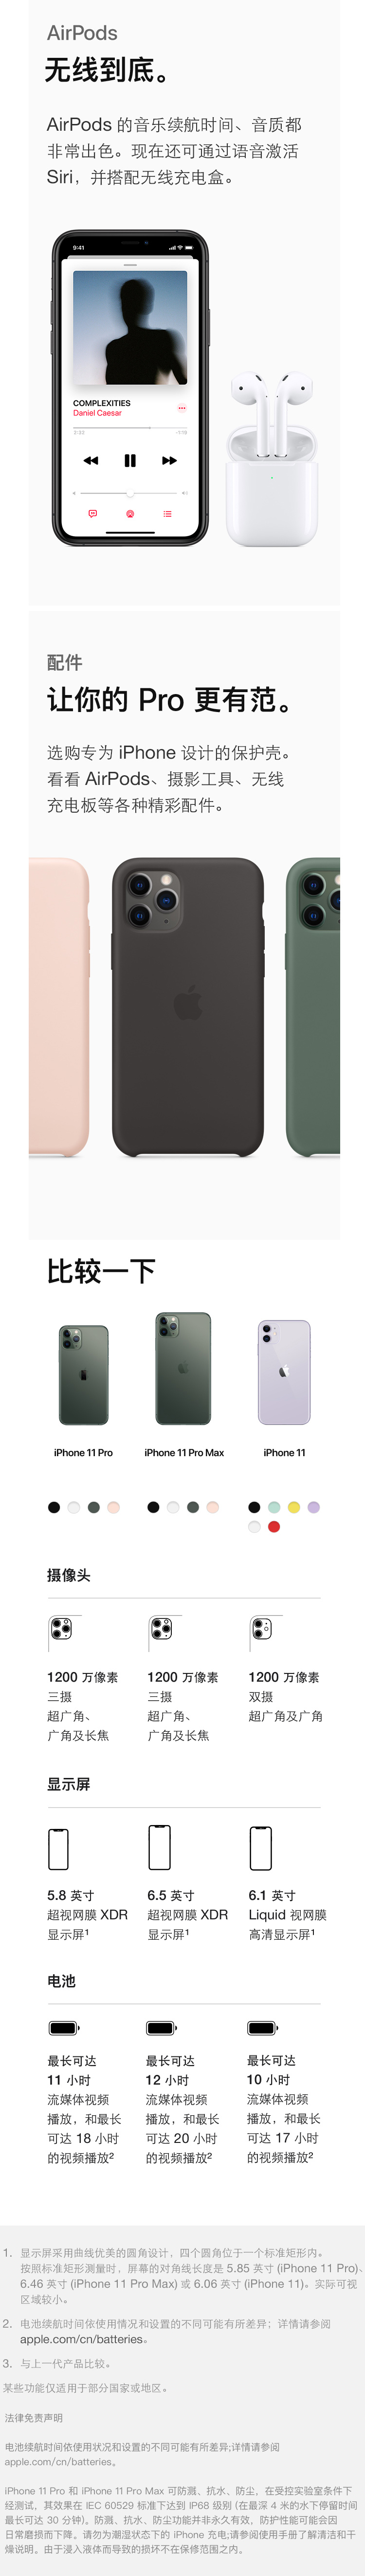 中山手机网 苹果(apple) iphone 11 pro手机专卖